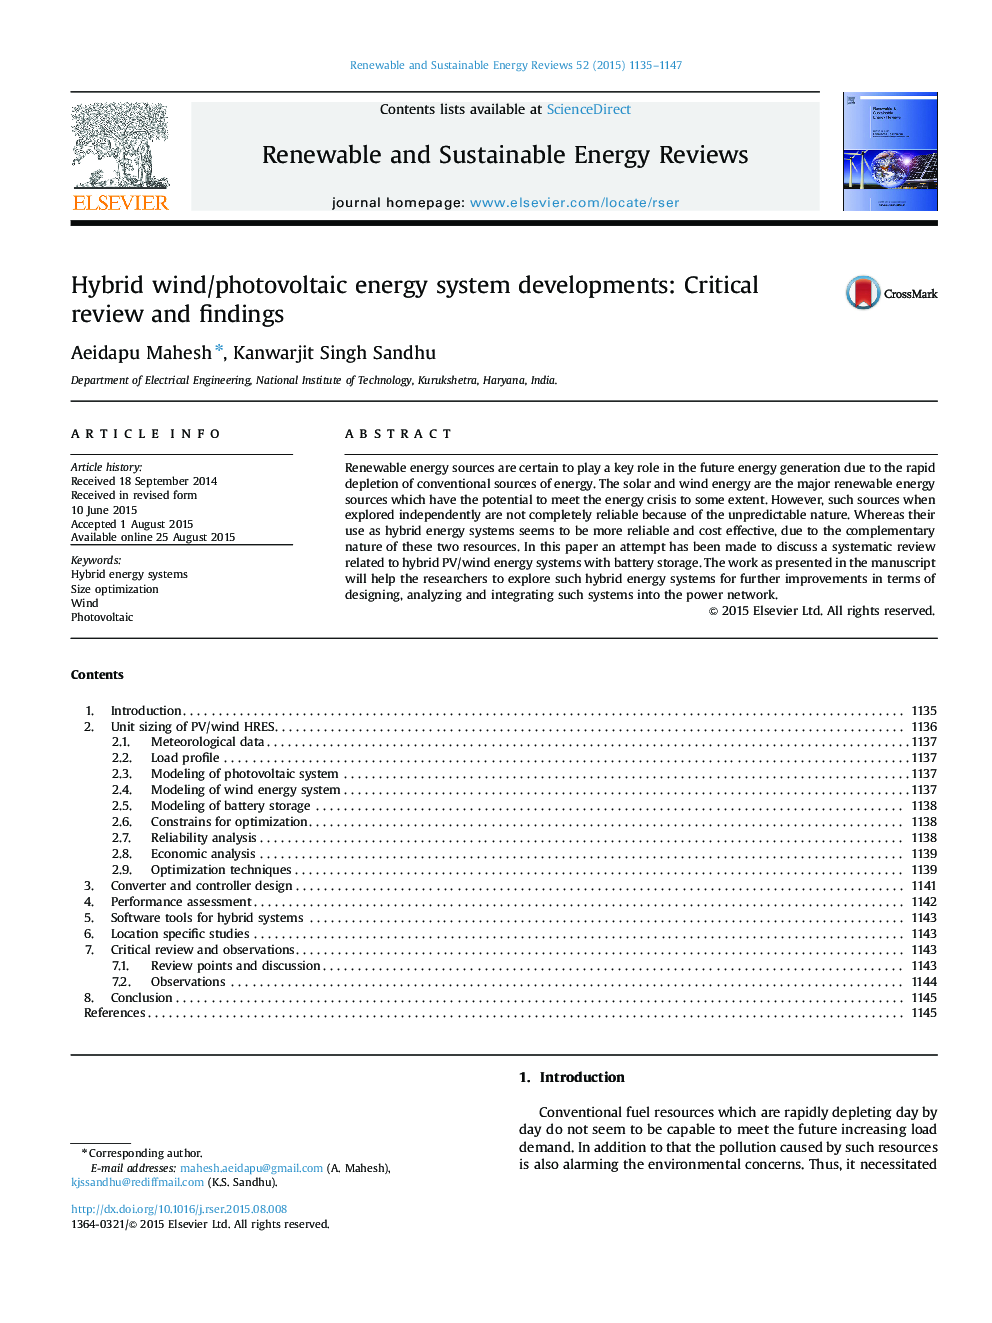 تحولات سیستم انرژی باد / فتوولتائیک: بررسی انتقادی و یافته ها 